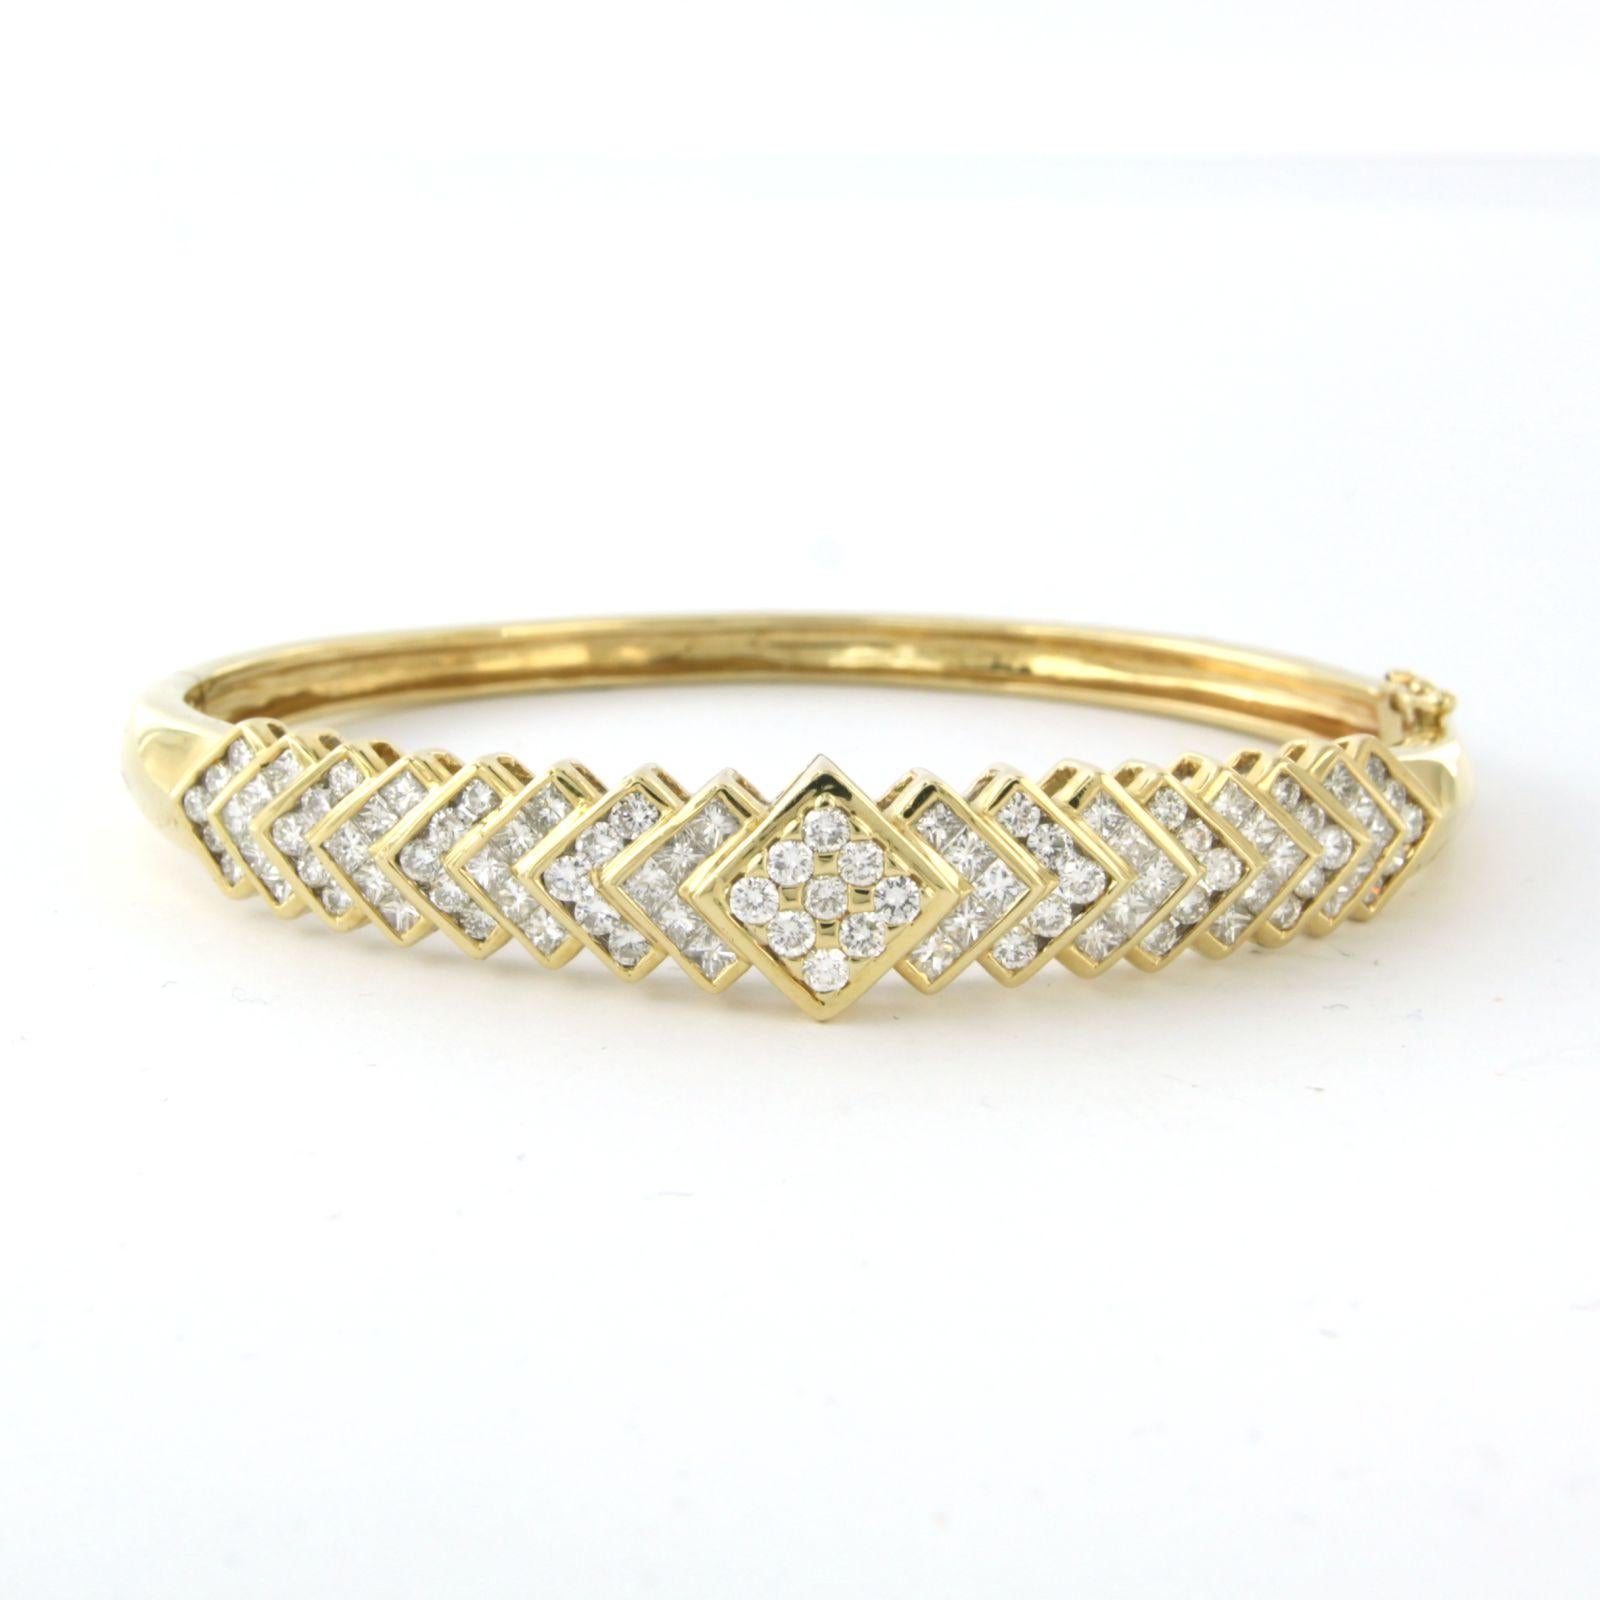 Bracelet clamper en or jaune 14k serti de diamants de taille princesse et brillant. 2.50ct - F/G - VS/SI - taille intérieure 5.7 cm x 4.7 cm

description détaillée

le haut du bracelet mesure 1,0 cm de large et 7,5 mm de haut

La taille intérieure